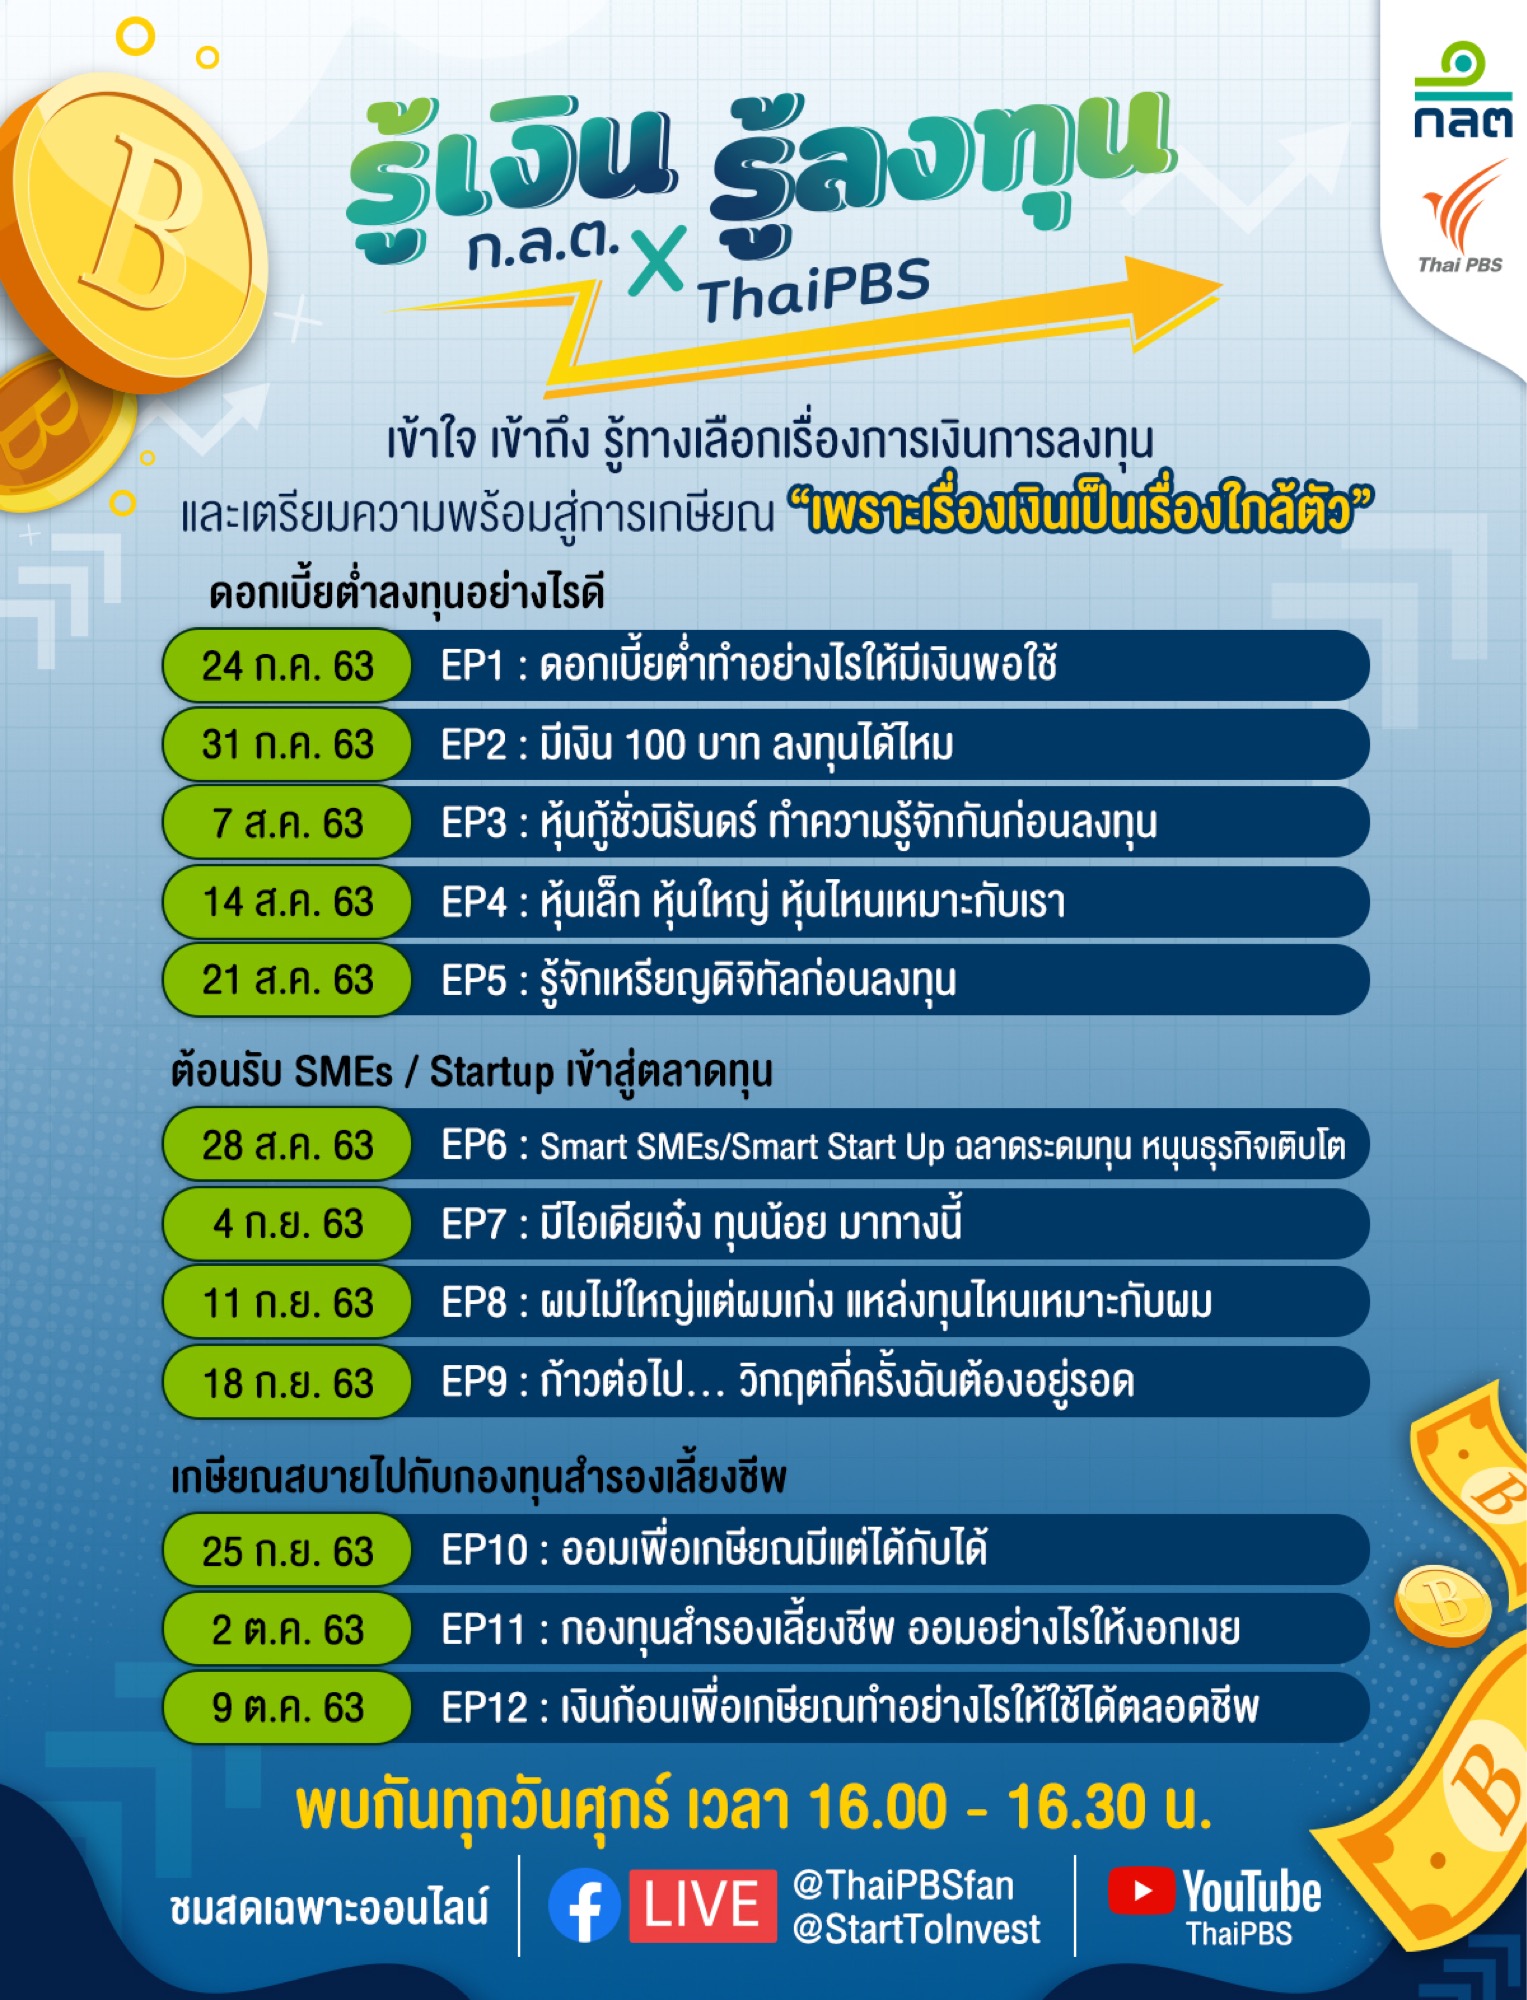 ก.ล.ต. จับมือไทยพีบีเอส ผลิตรายการสด รู้เงิน รู้ลงทุน 12 ตอนผ่านสื่อสังคมออนไลน์ ให้ความรู้ด้านการเงินการลงทุน